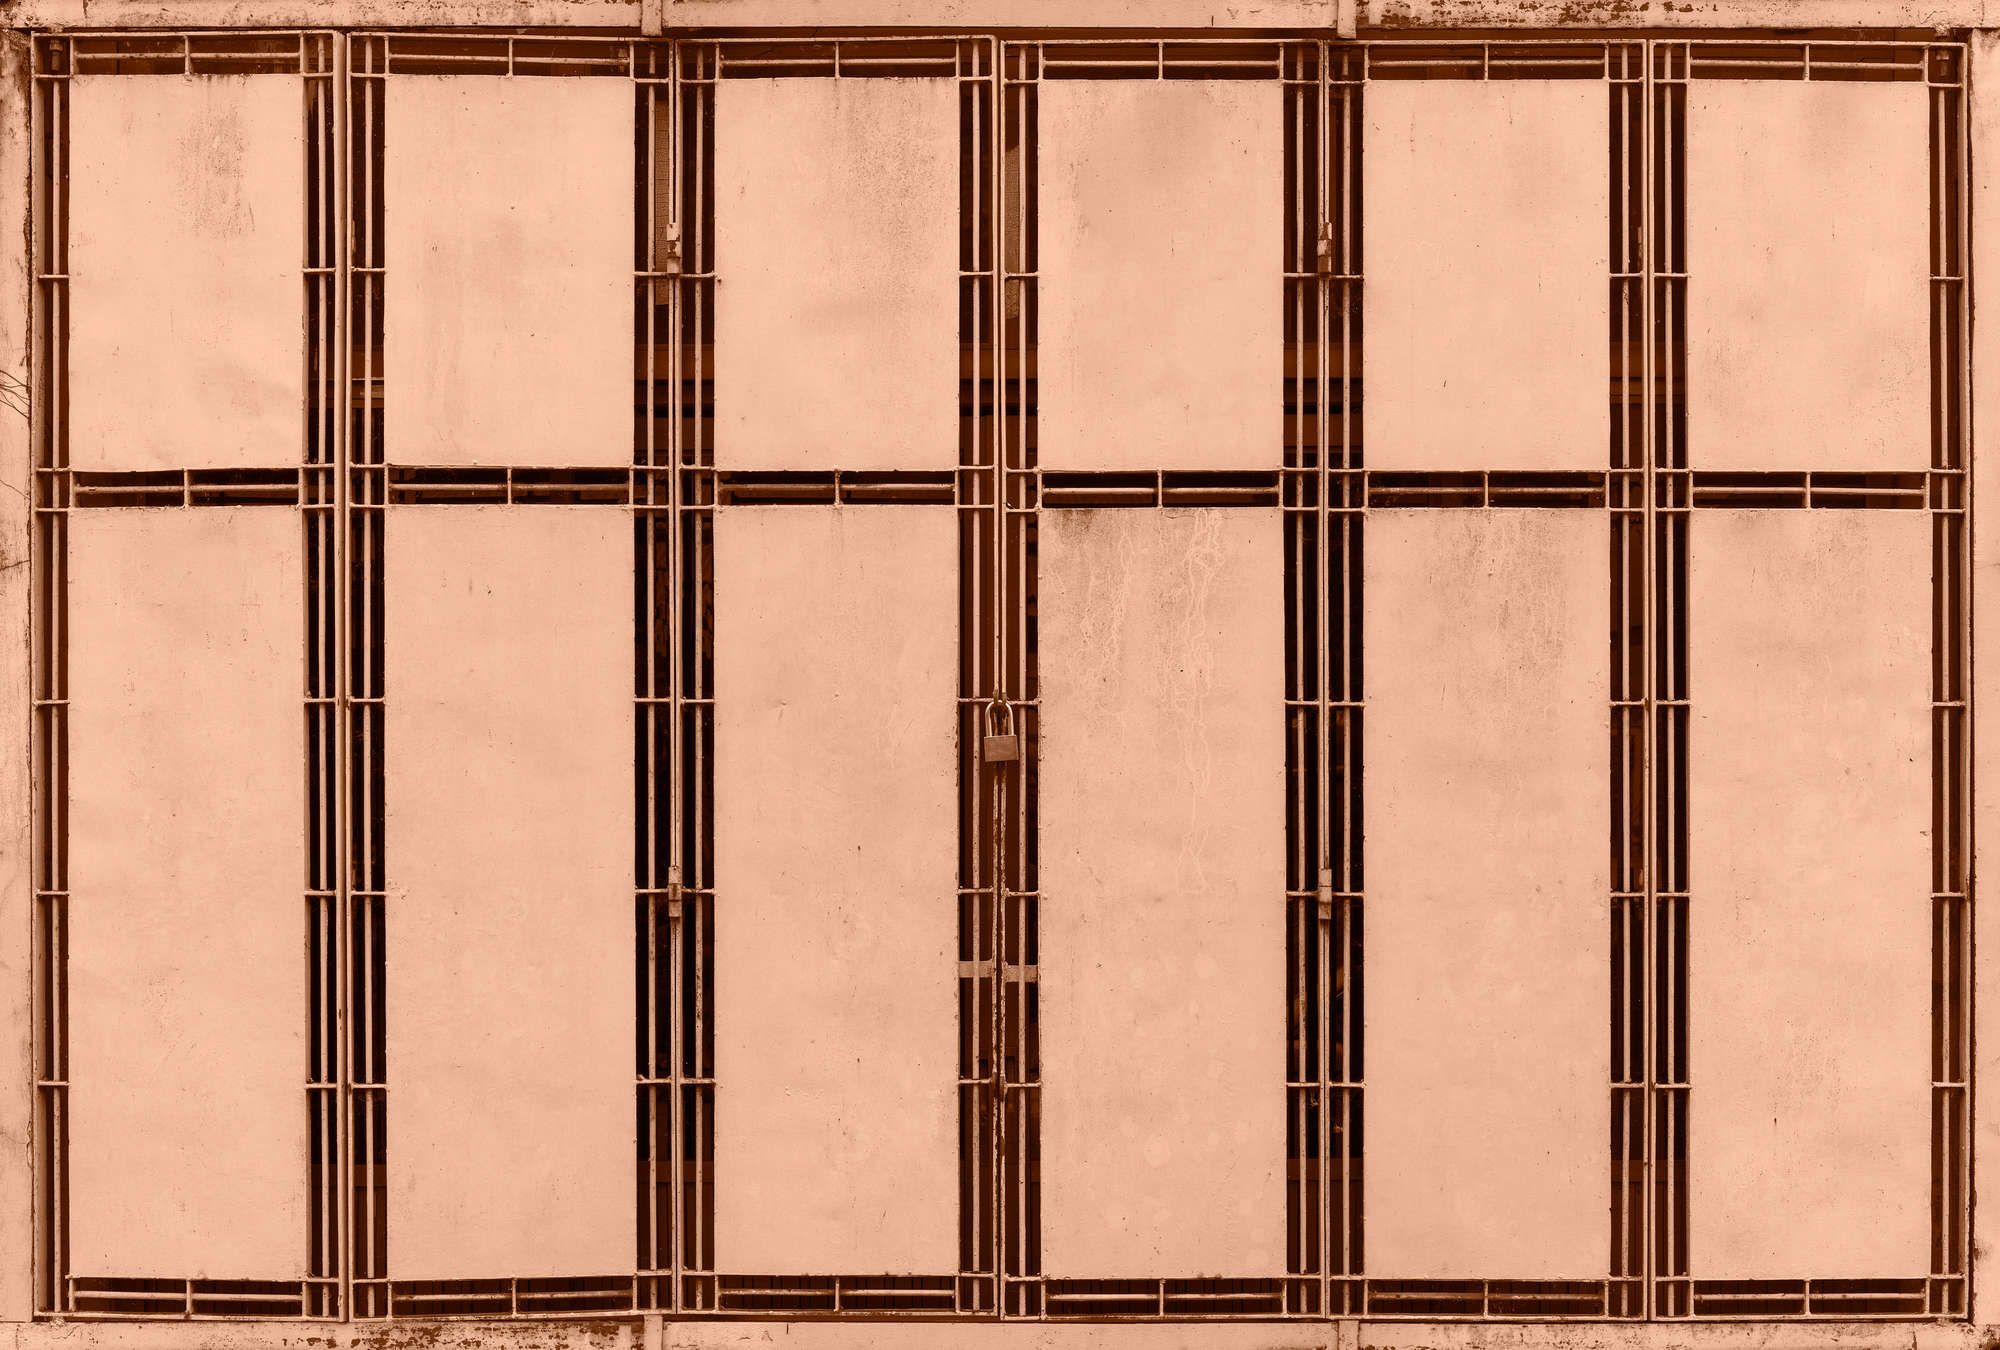             papier peint en papier panoramique »jaipur« - détail d'une clôture métallique saumon - intissé mat, lisse
        